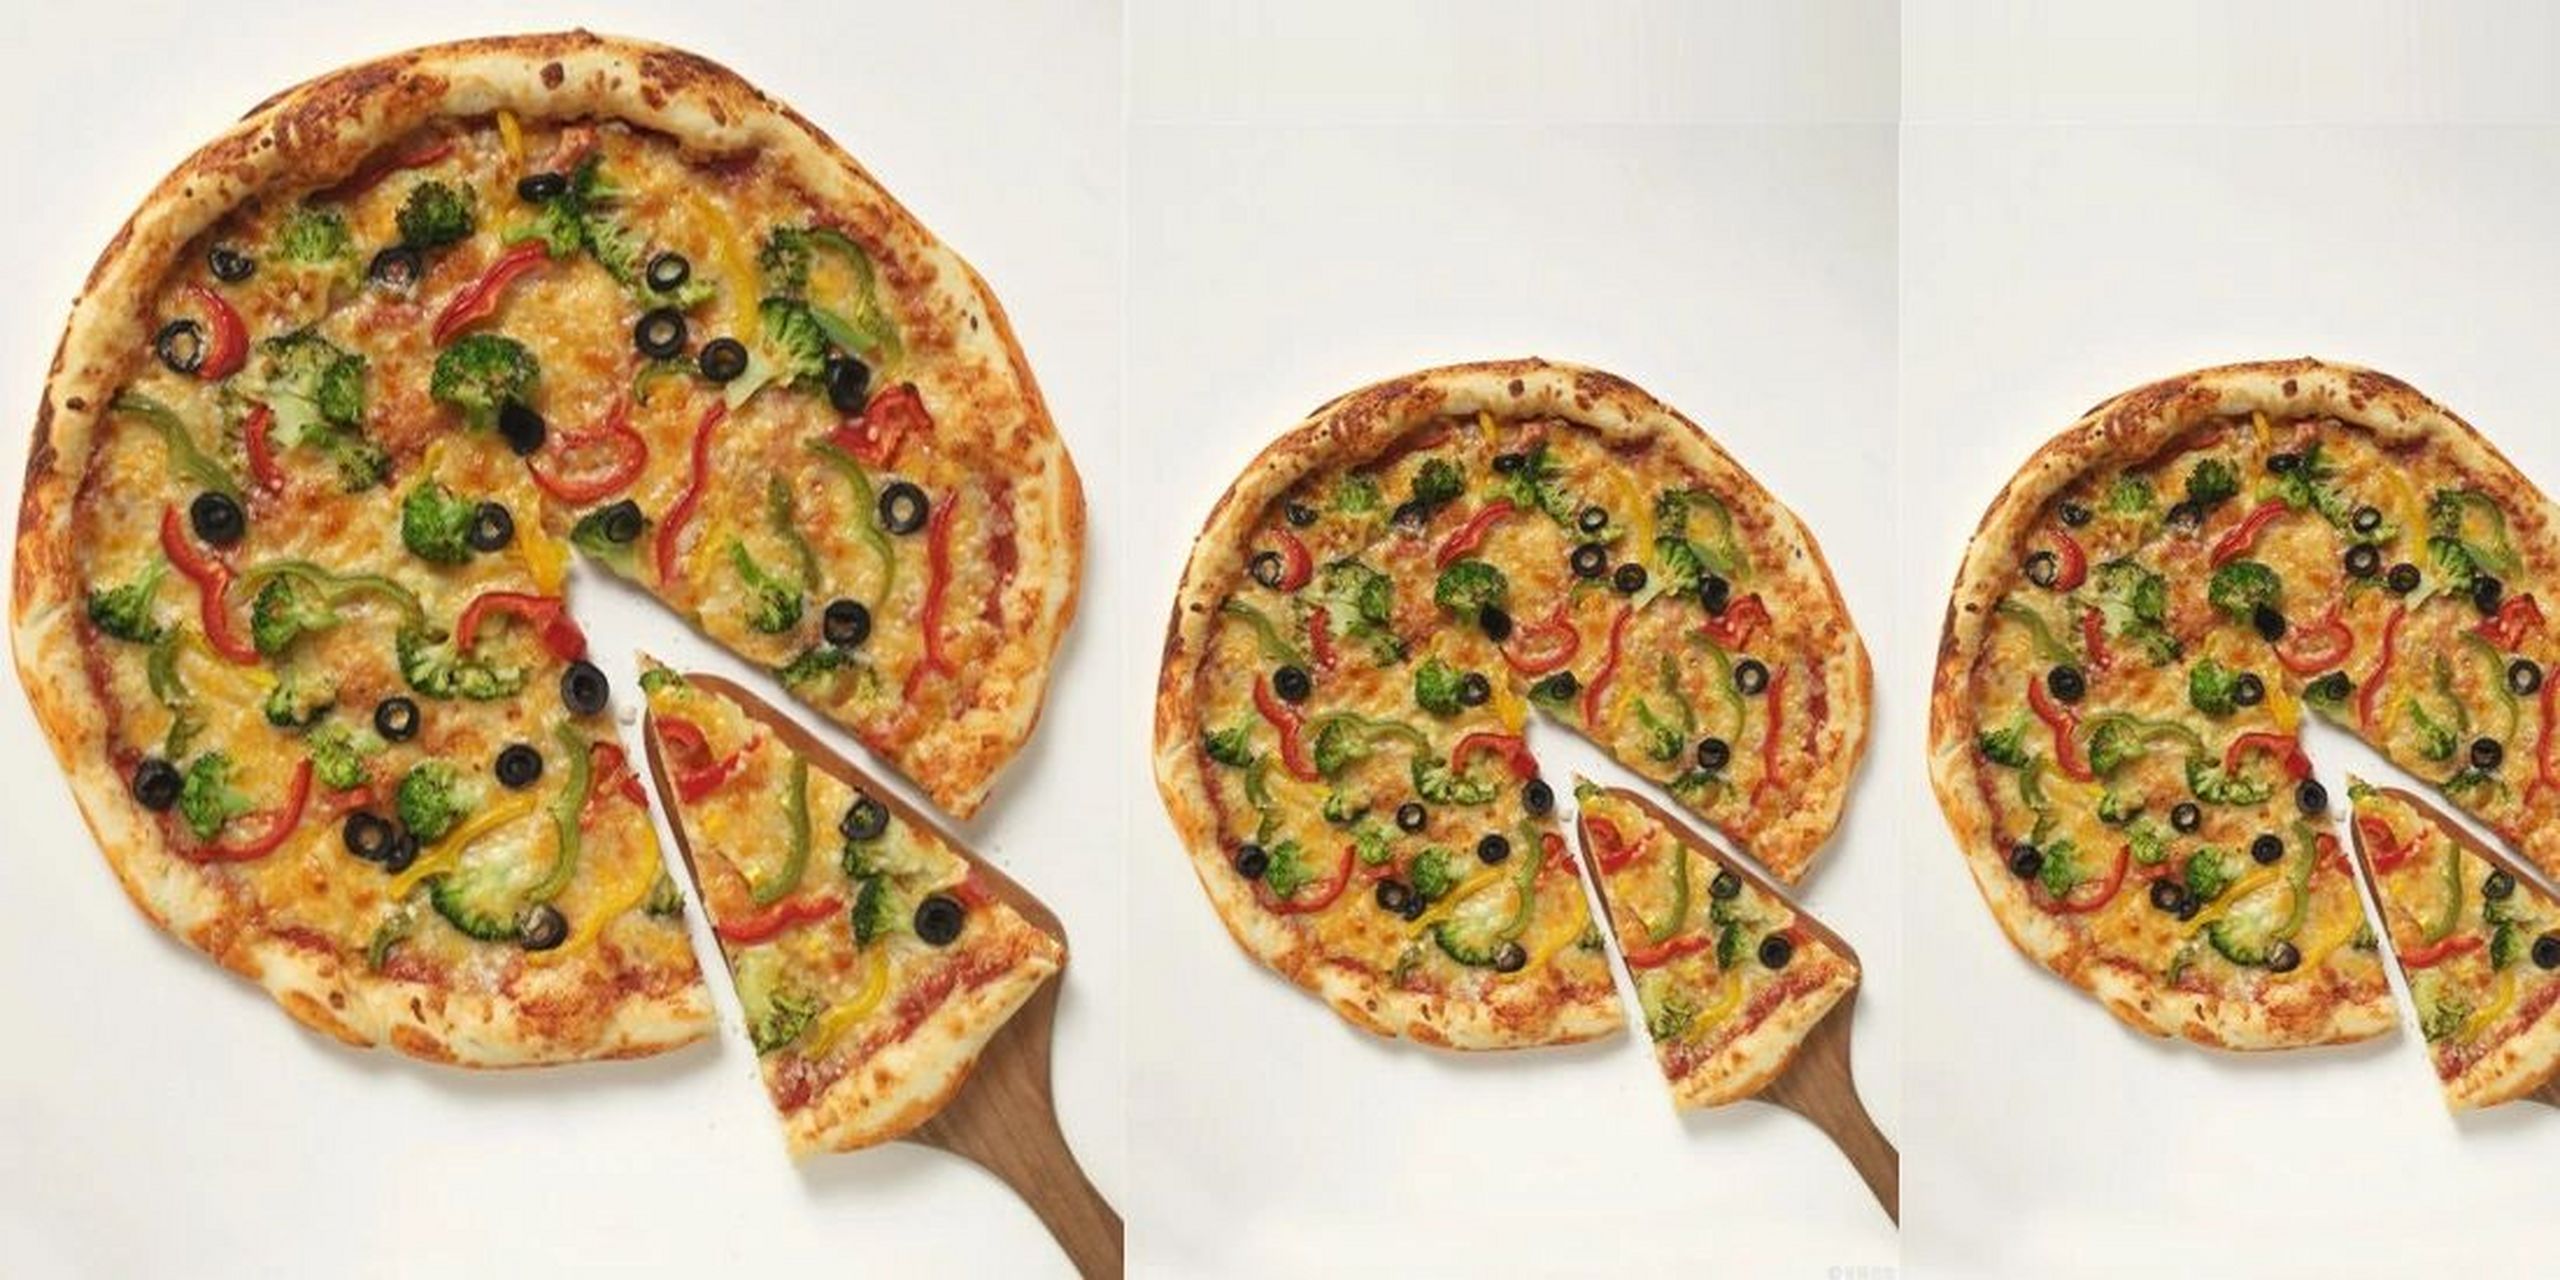 假设9英寸披萨与6英寸披萨厚度一样,那么我们只需要比较披萨的面积